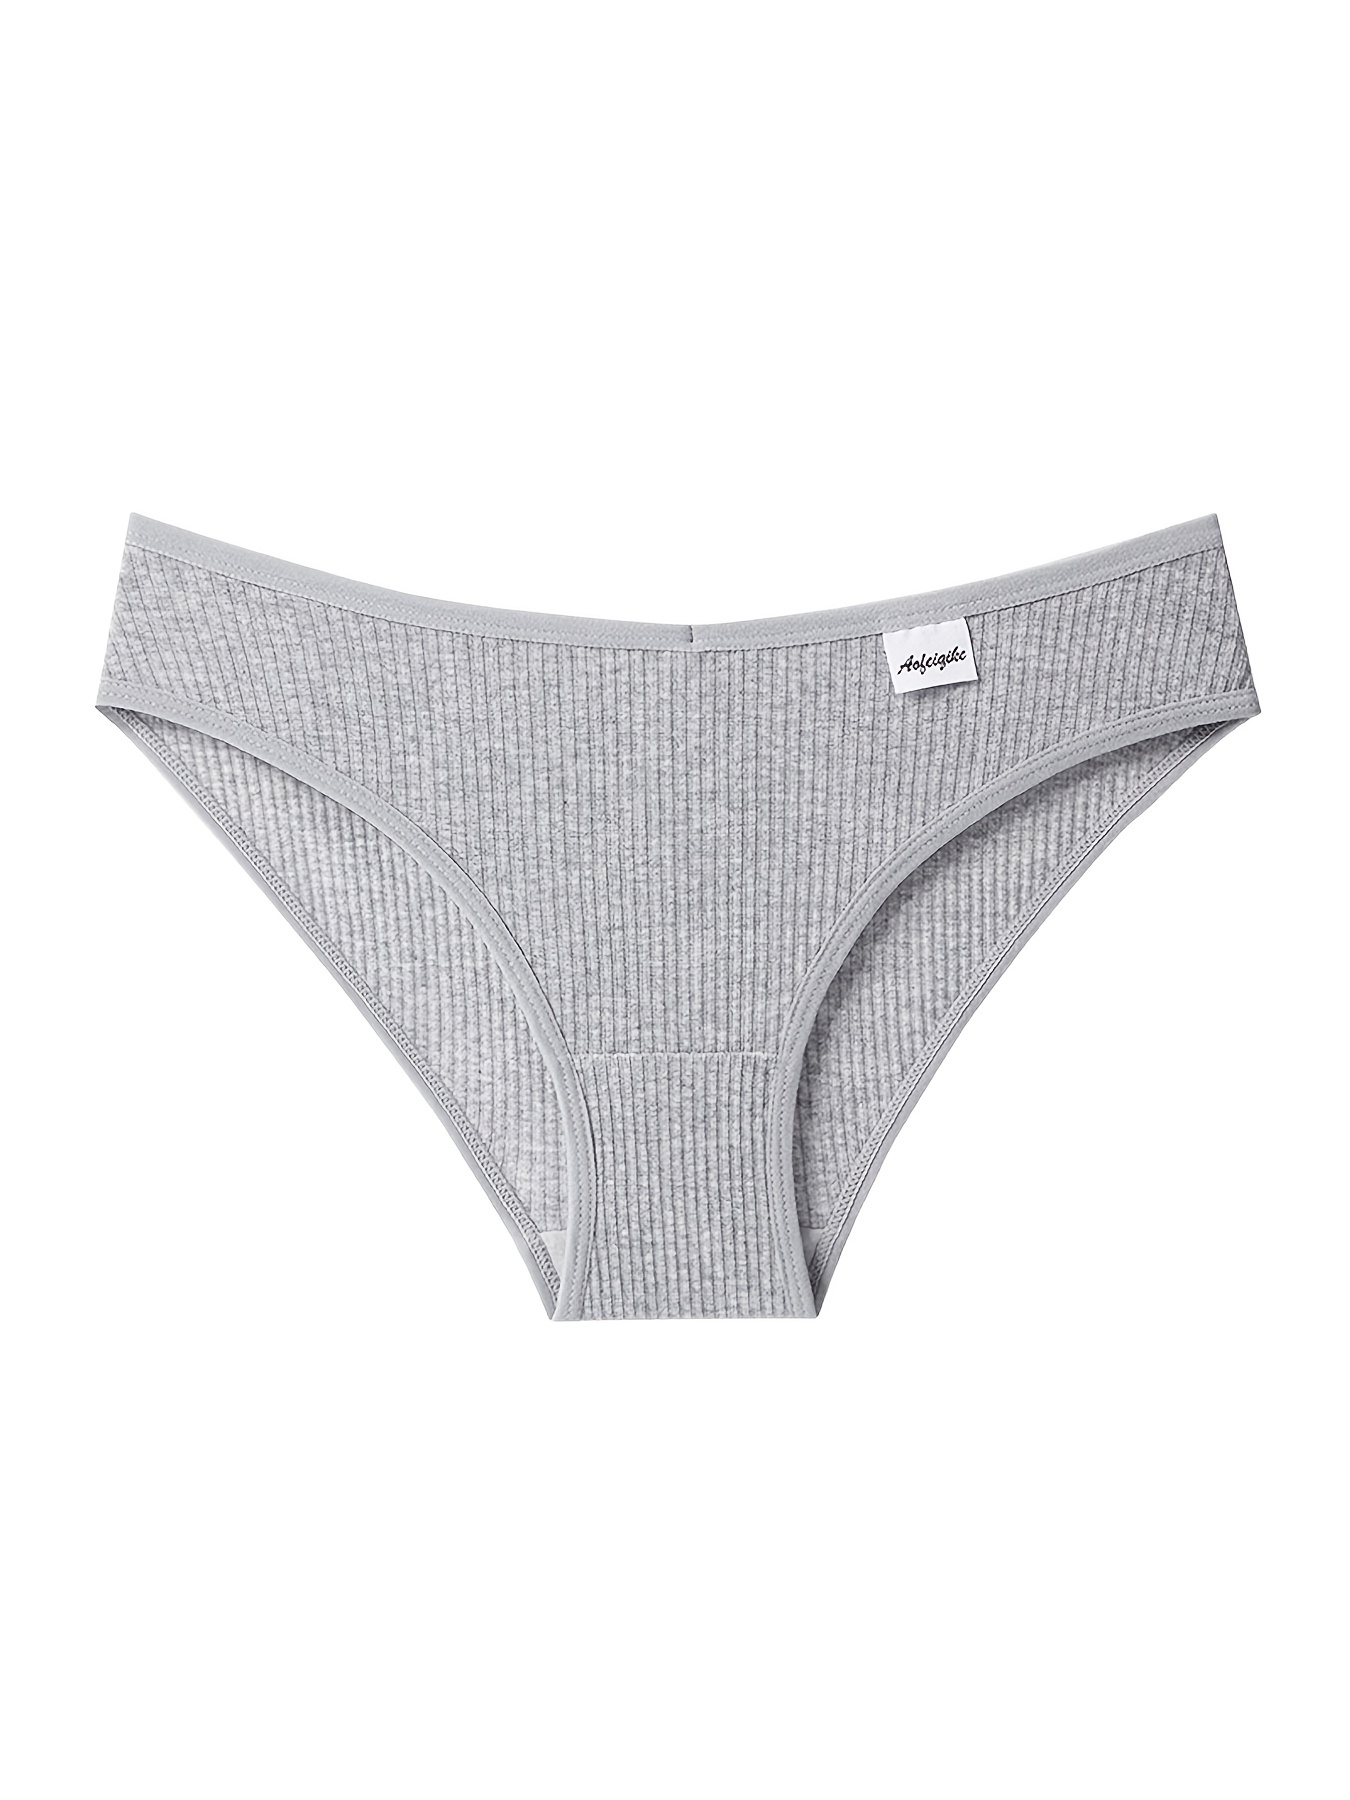 New White MID Waist Underwear Women′s Cotton Crotch